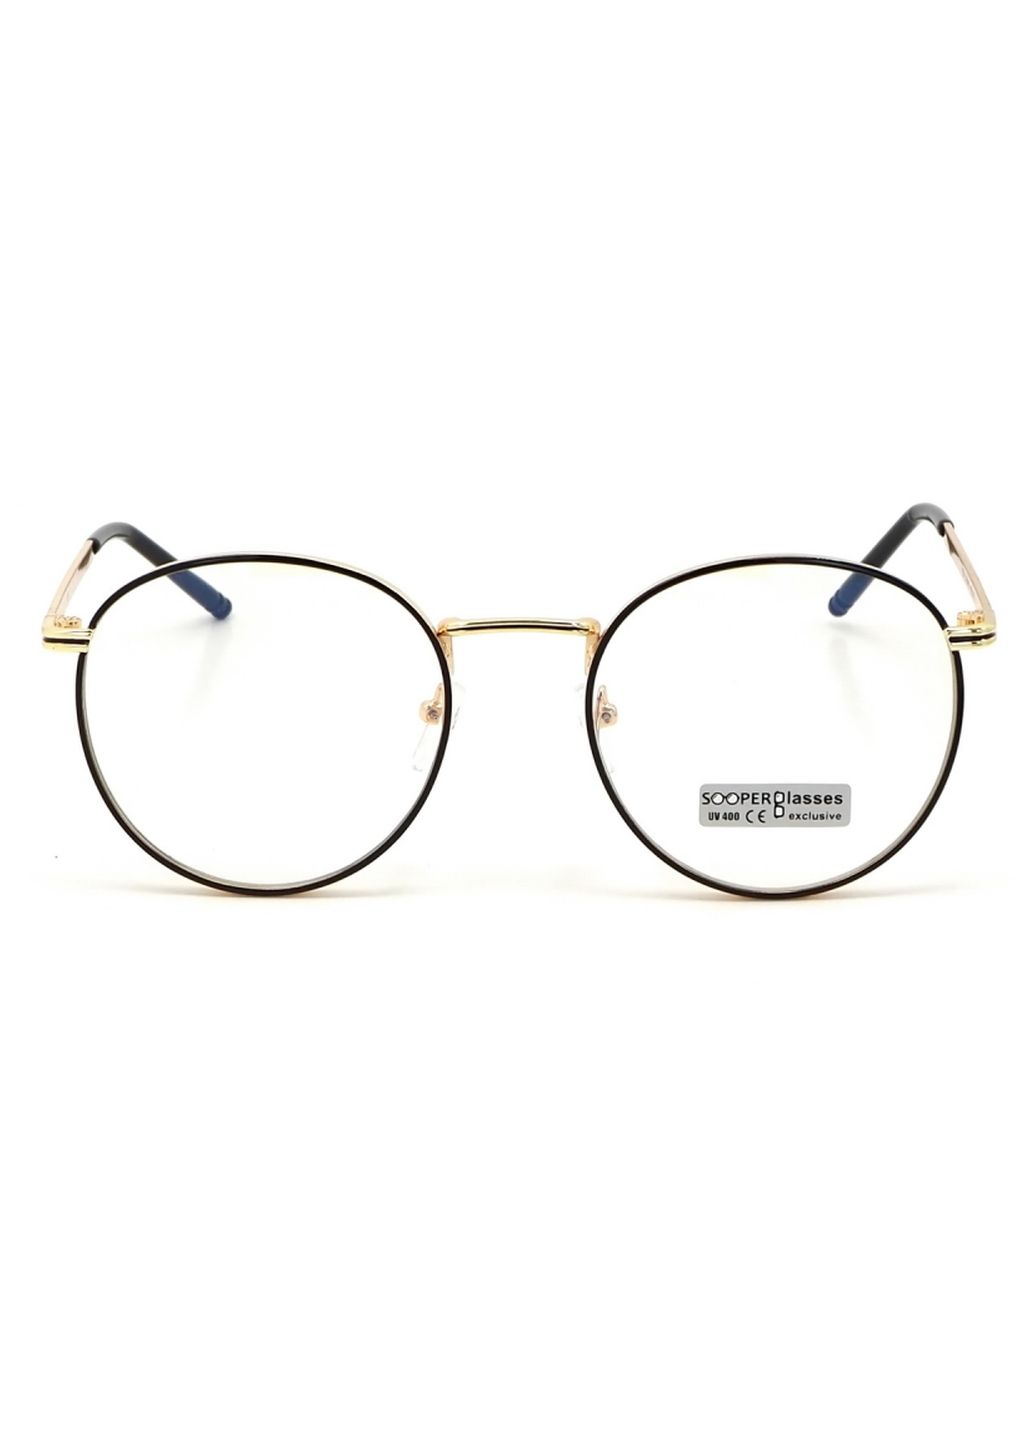 Купить Очки для работы за компьютером Cooper Glasses в золотой оправе 124003 в интернет-магазине